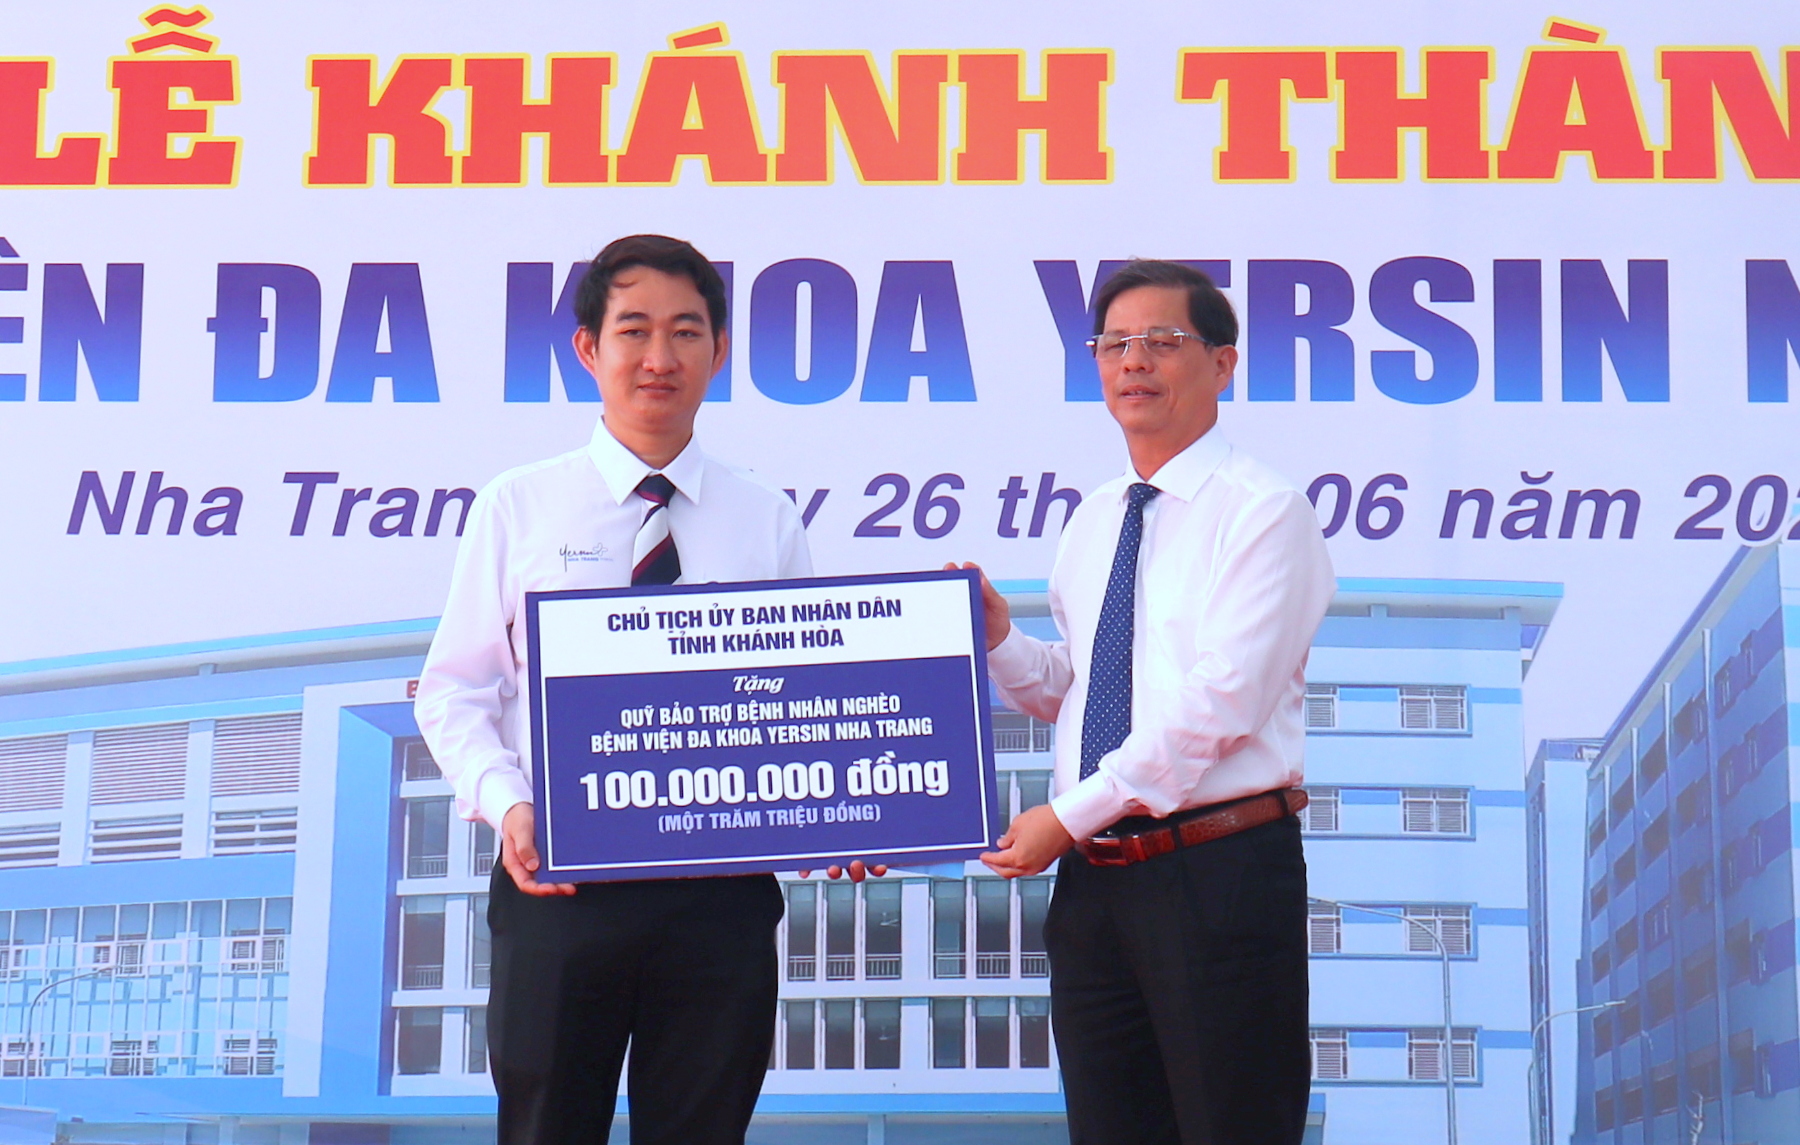 Đồng chí Nguyễn Tấn Tuân tặng 100 triệu đồng cho Quỹ Bảo trợ Bệnh nhân nghèo của bệnh viện.